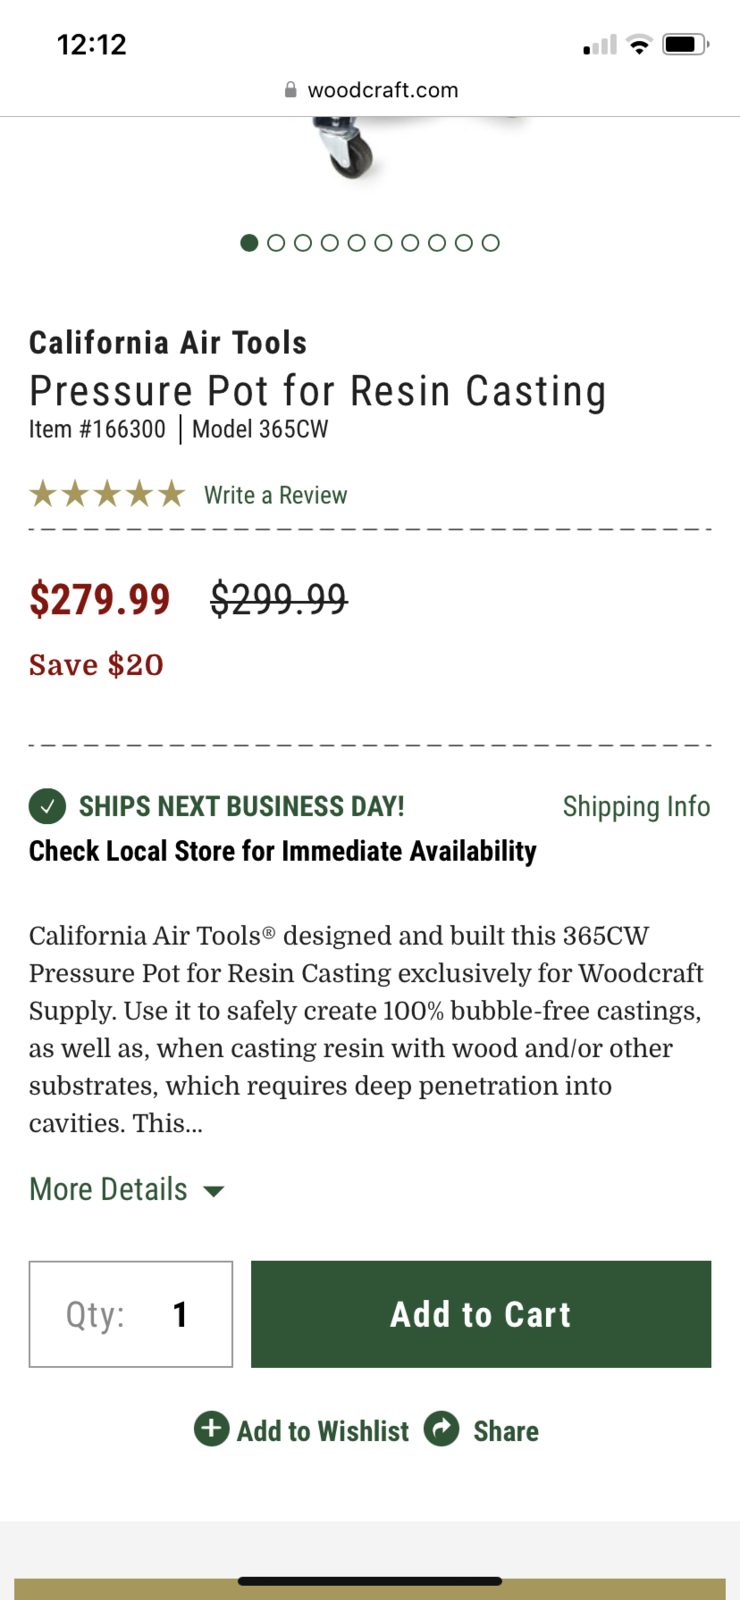 California Air Tools - Pressure Pot for Resin Casting